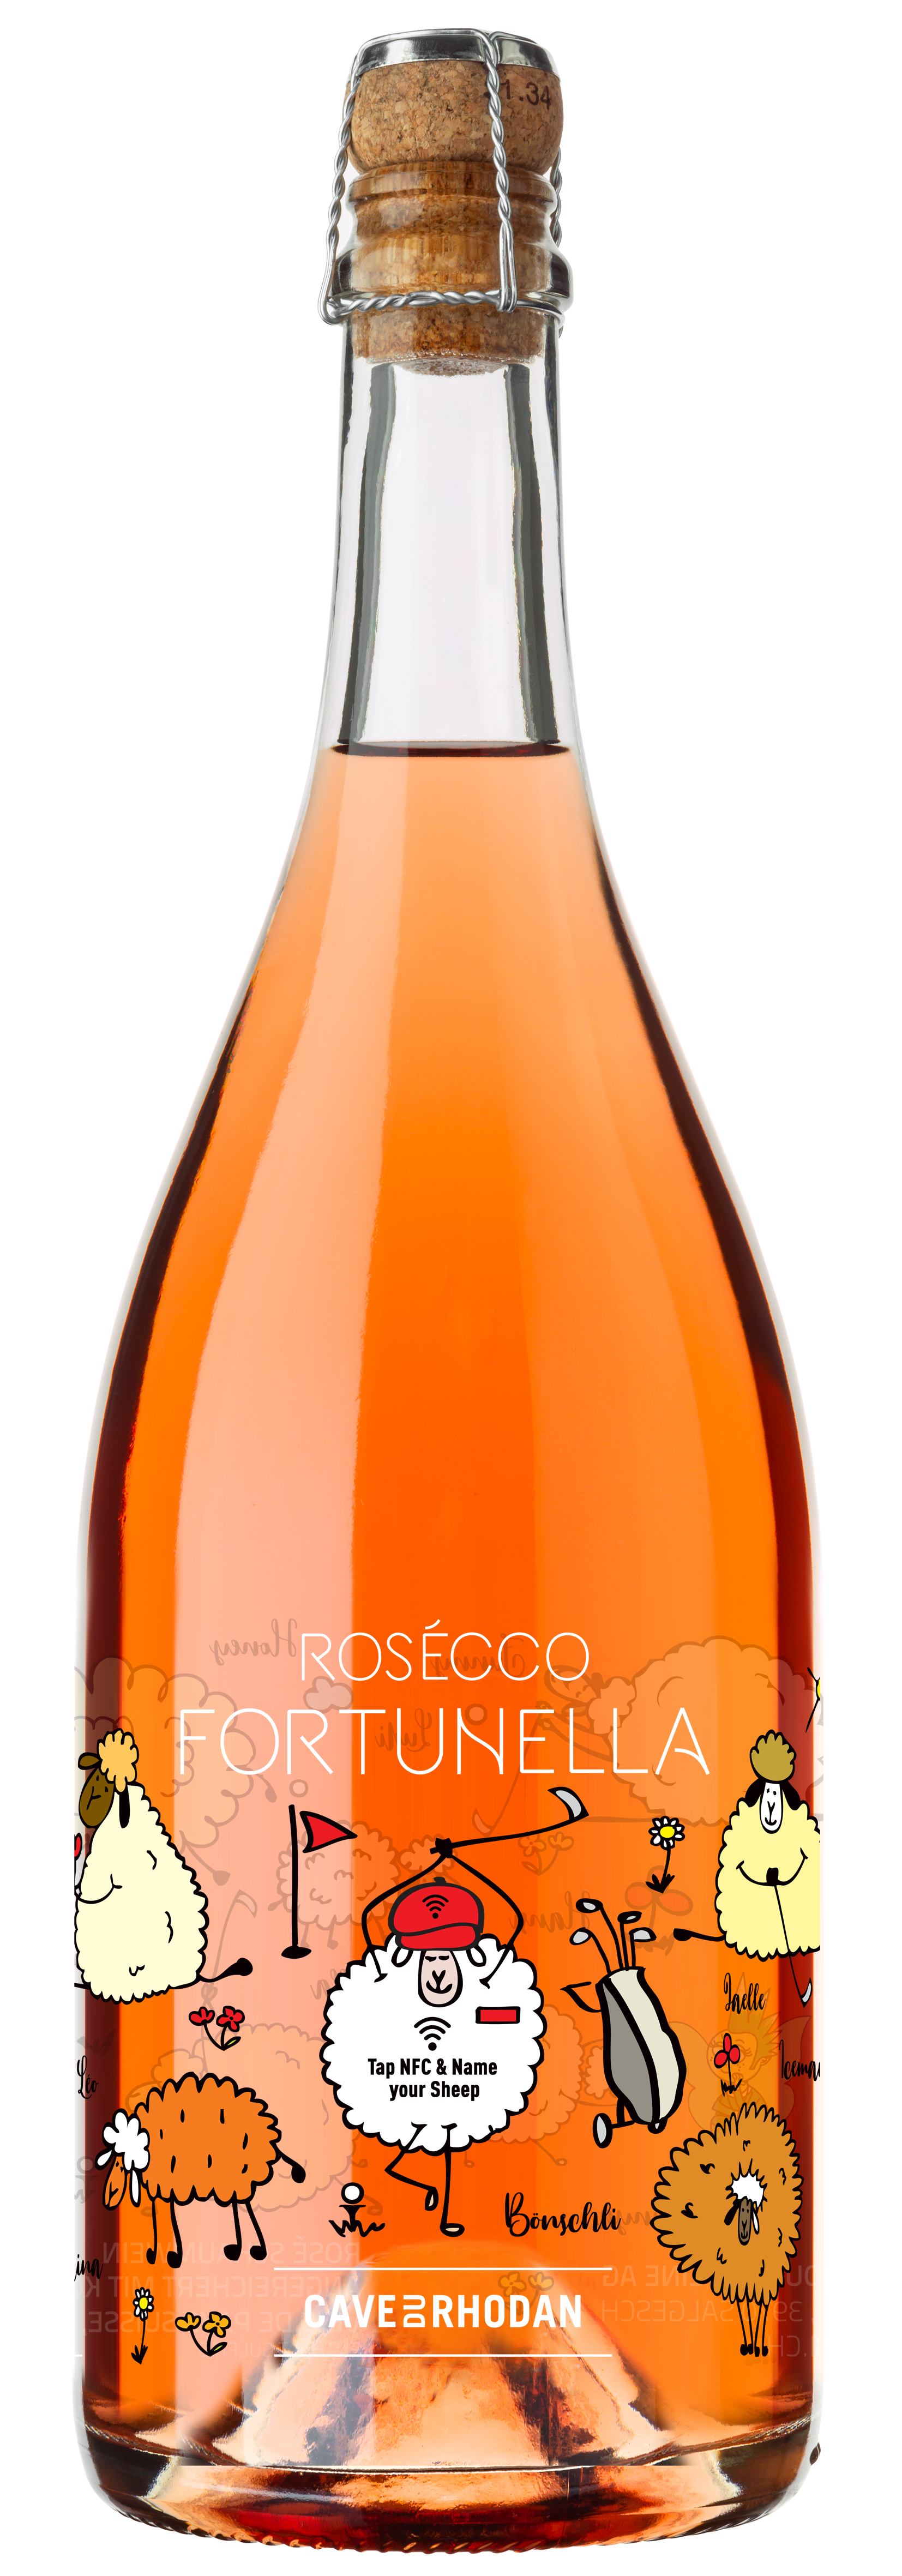 rosseco fortunella wine image